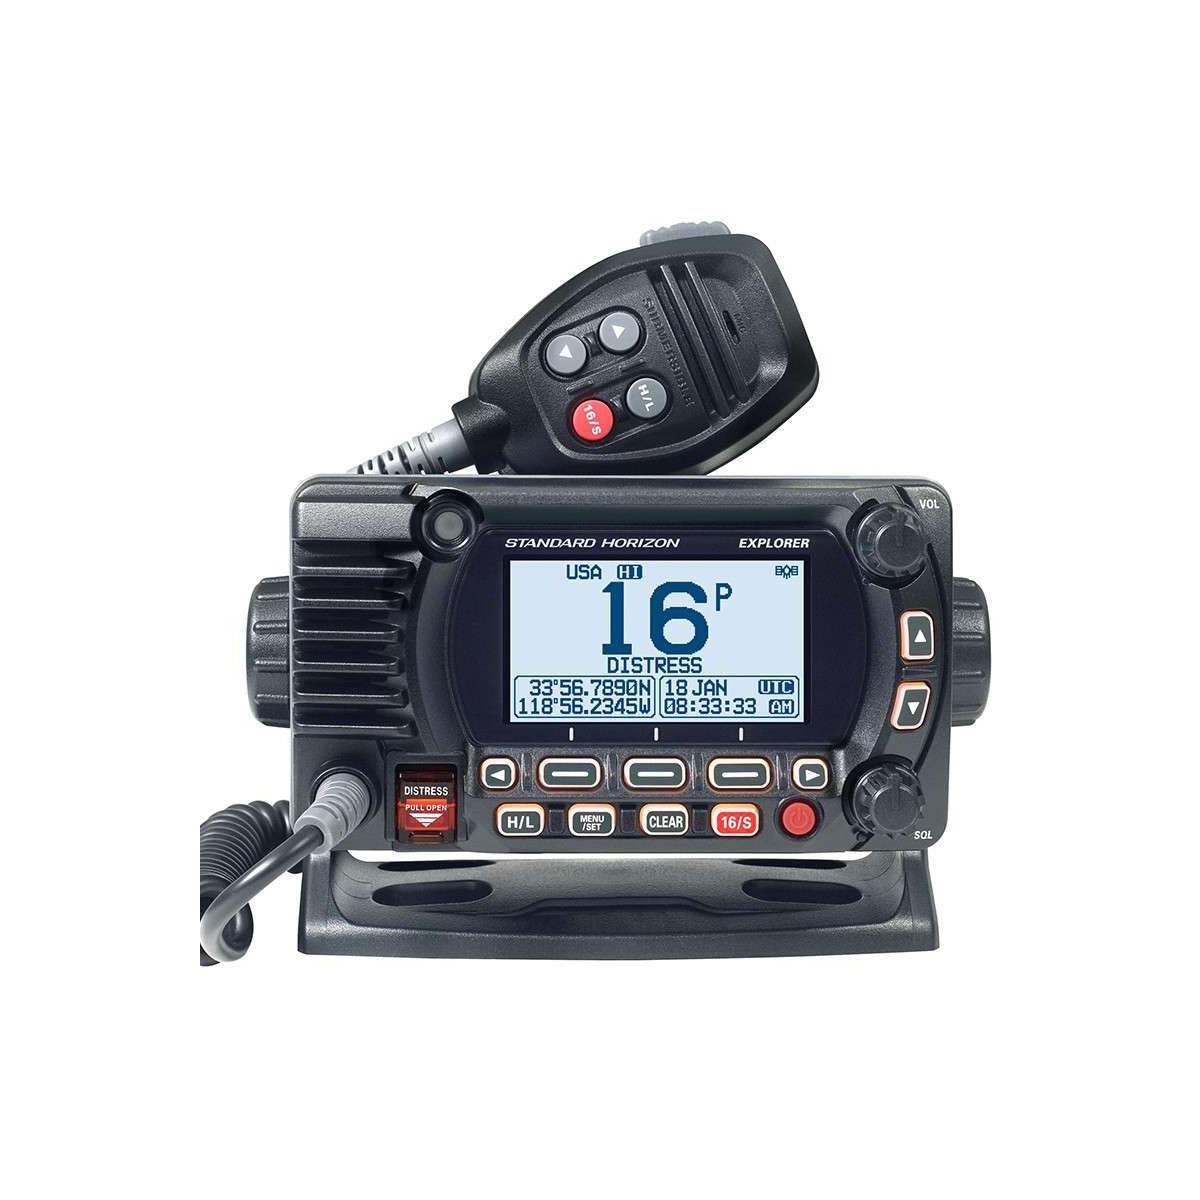 VHF Fixe GX1850G